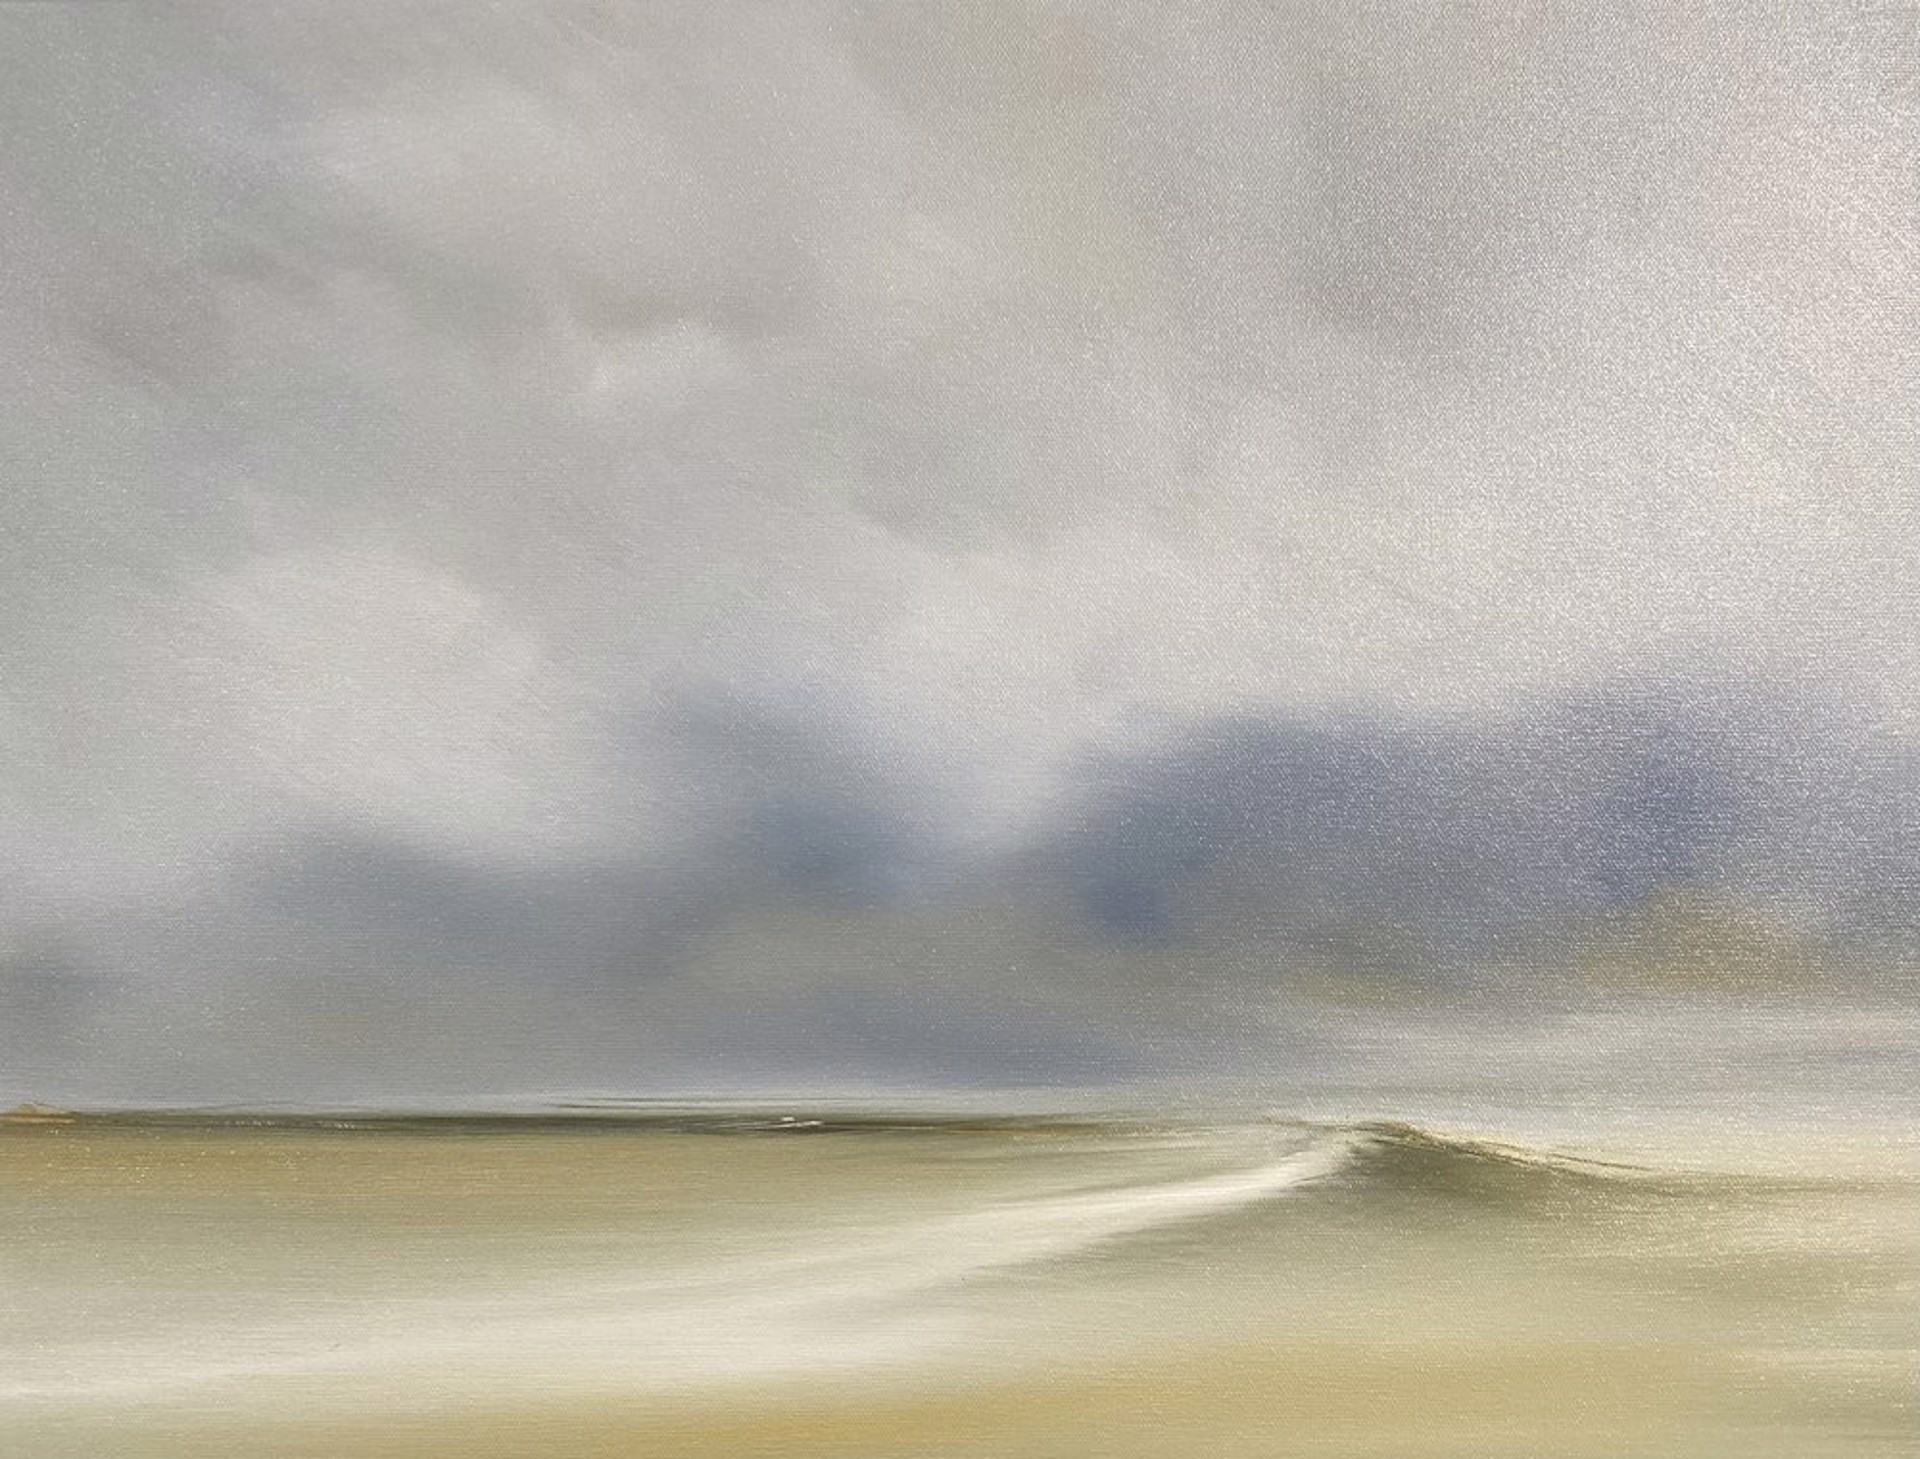 Dune by J. Scott Wilson